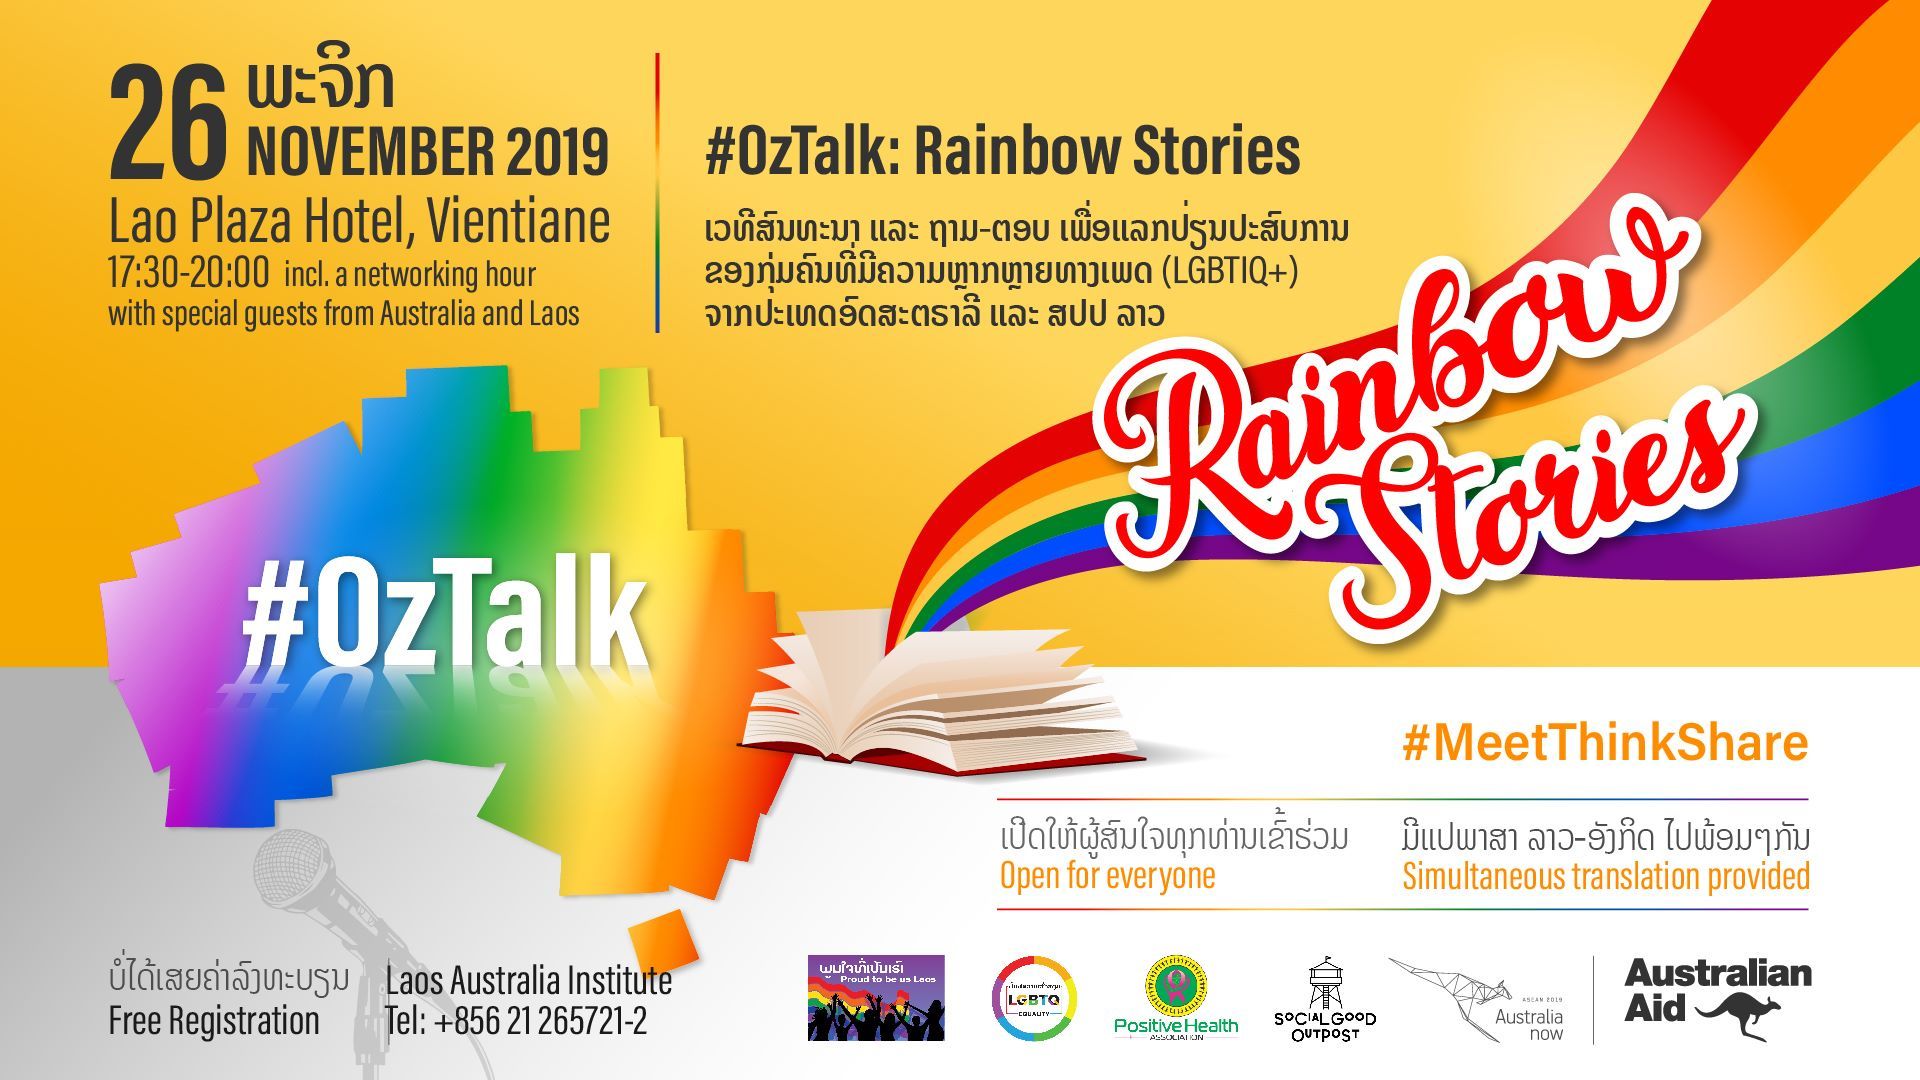 OzTalk: Rainbow Stories